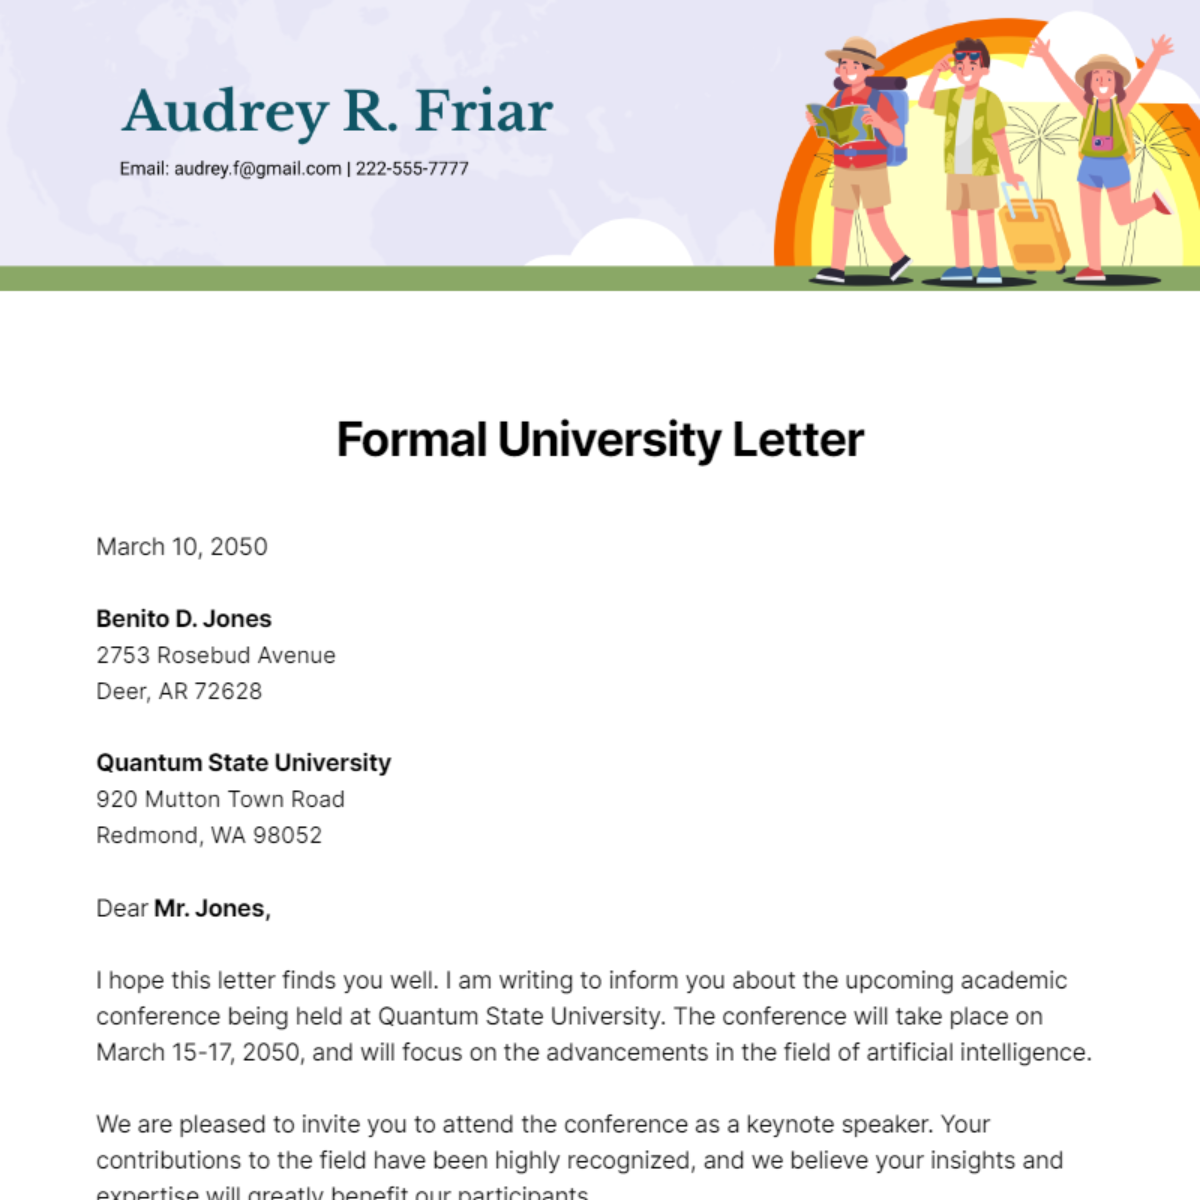 Formal University Letter Template